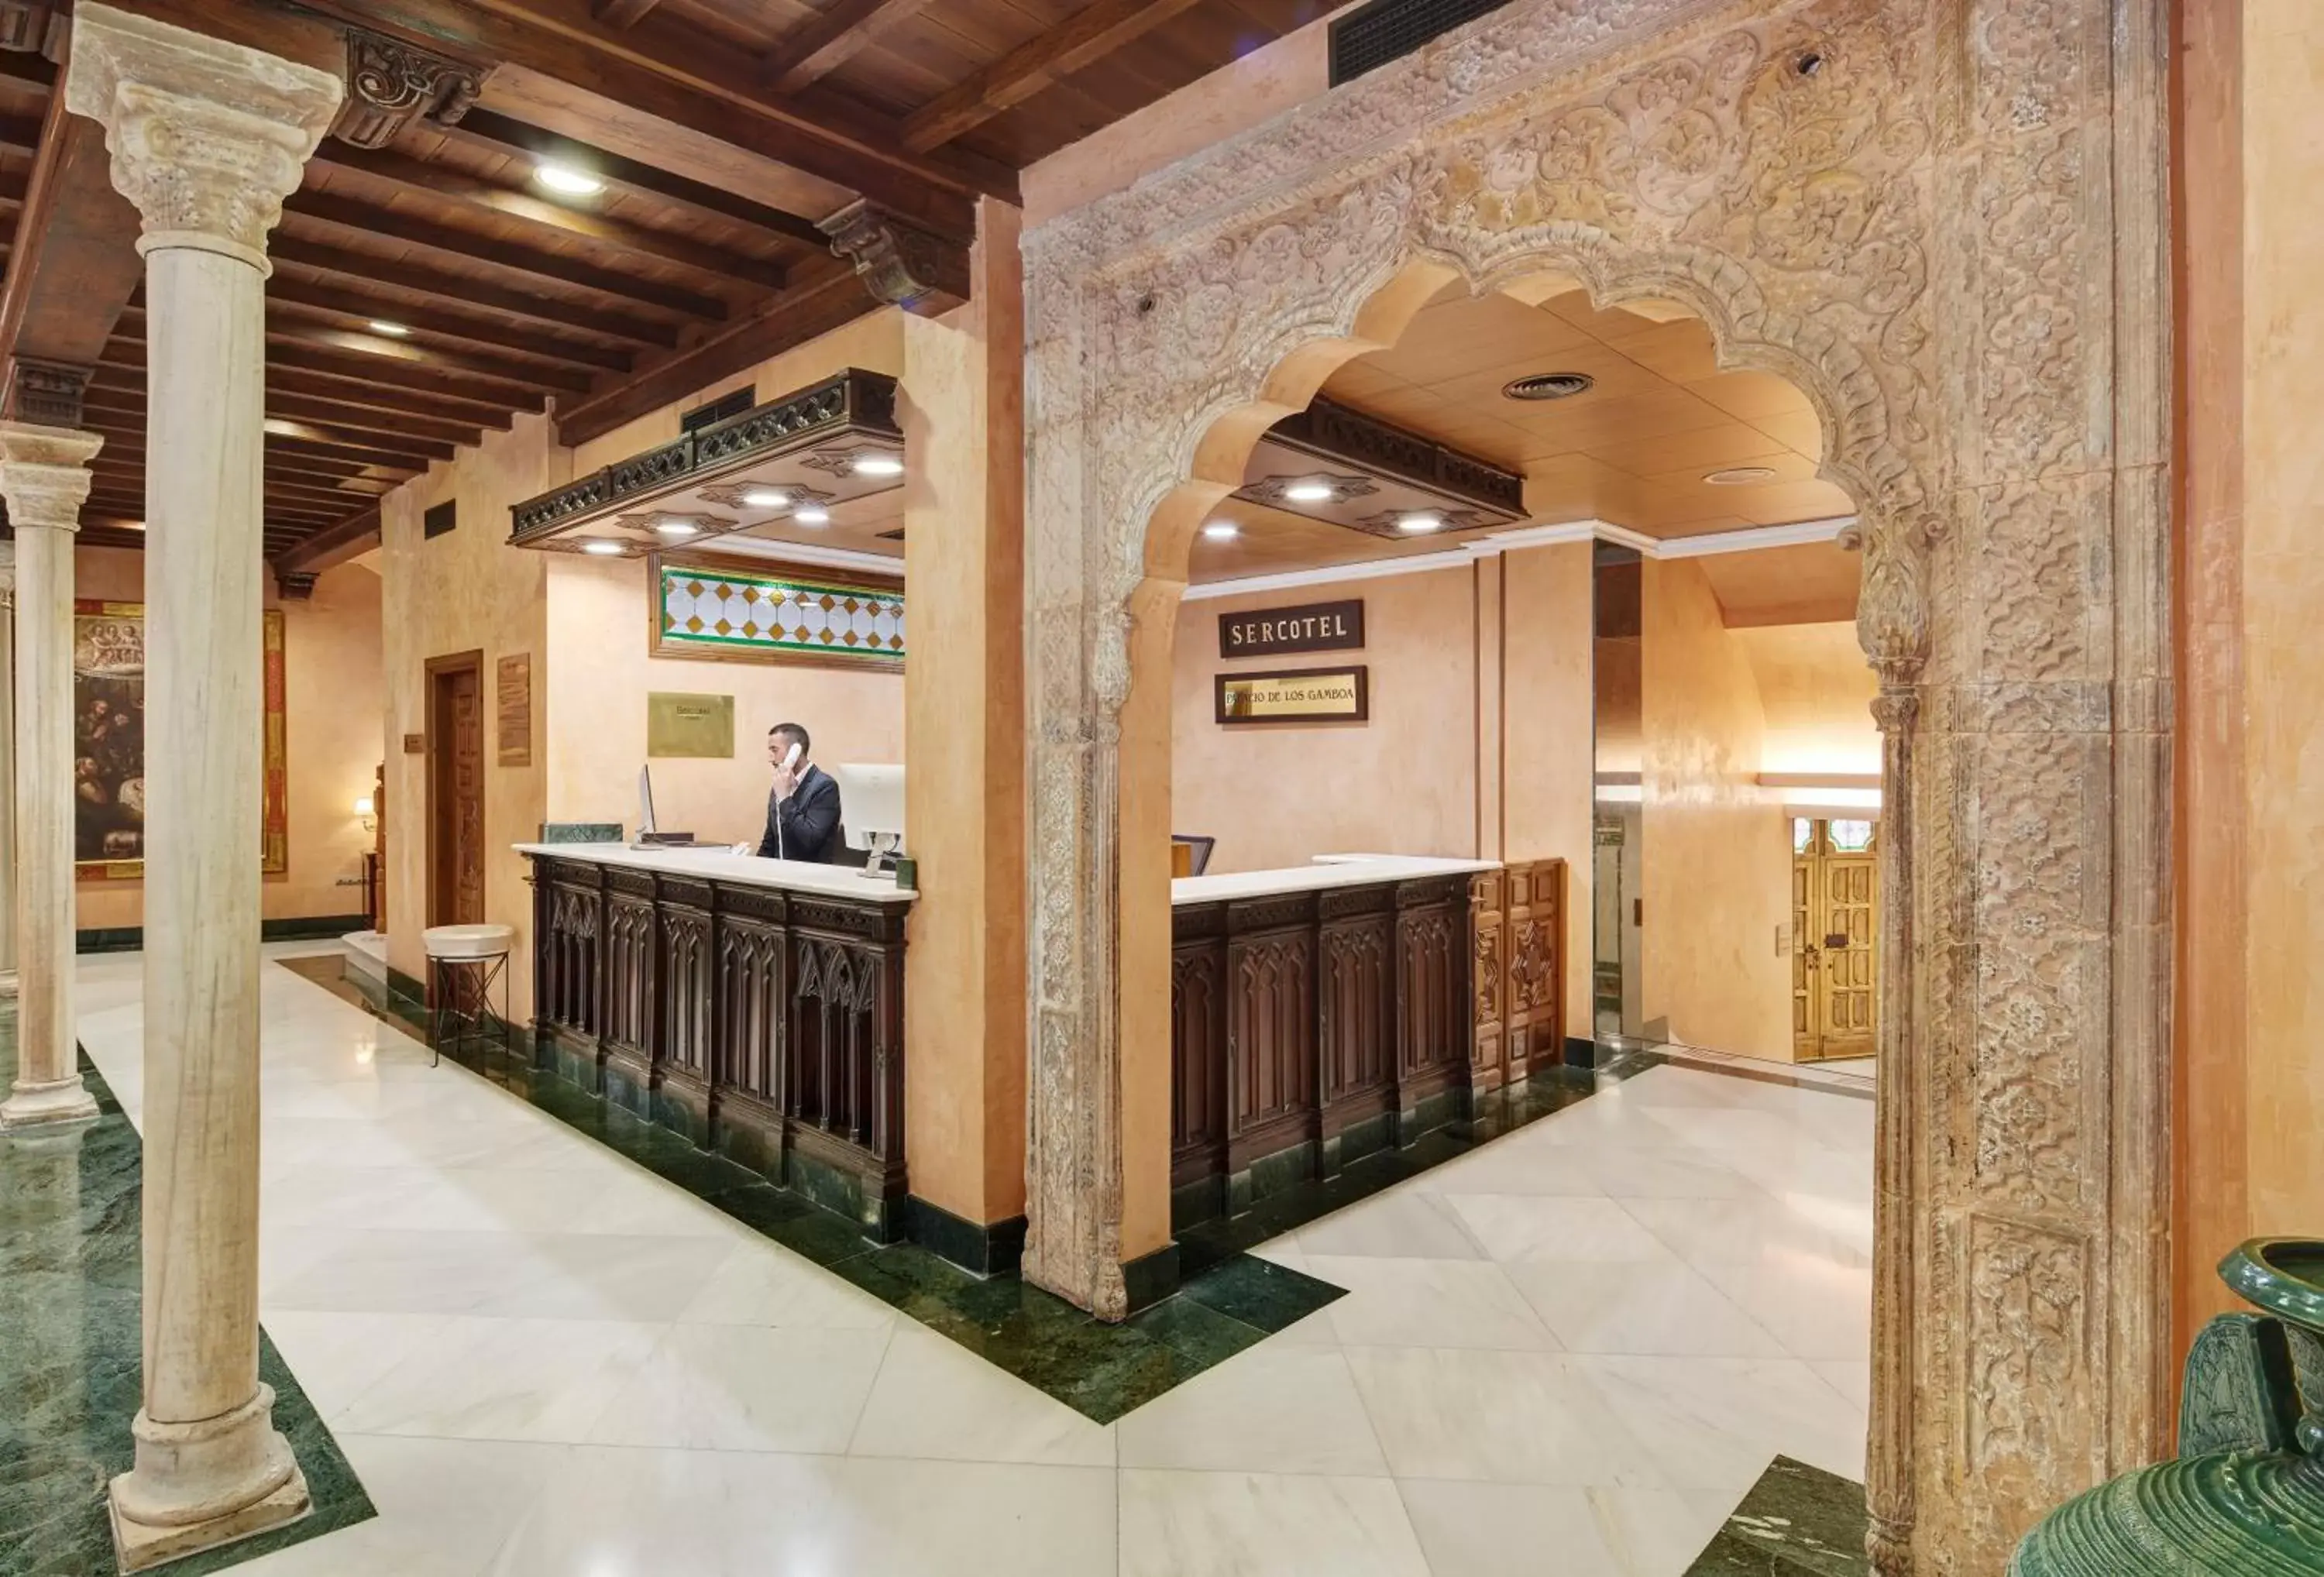 Lobby or reception, Lobby/Reception in Sercotel Palacio de los Gamboa